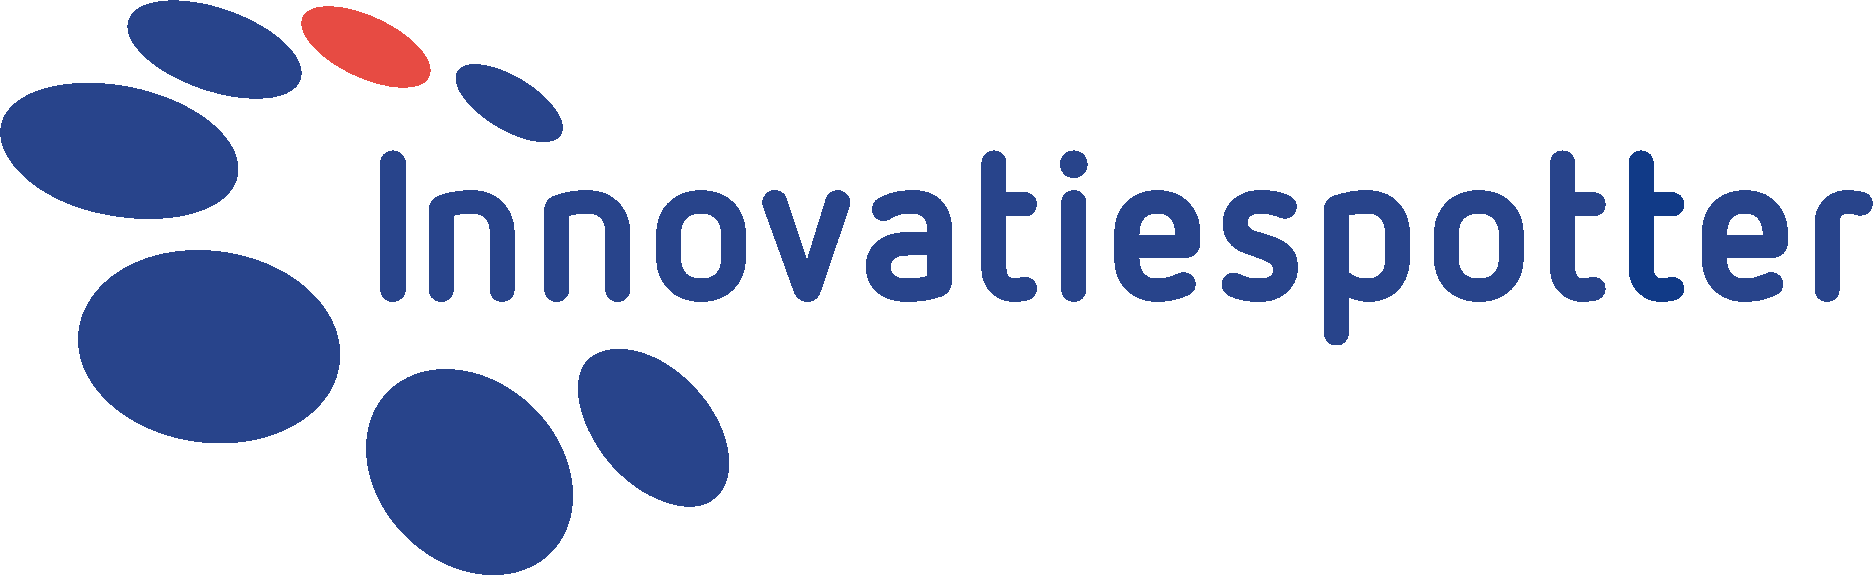 Innovatiespotter logo